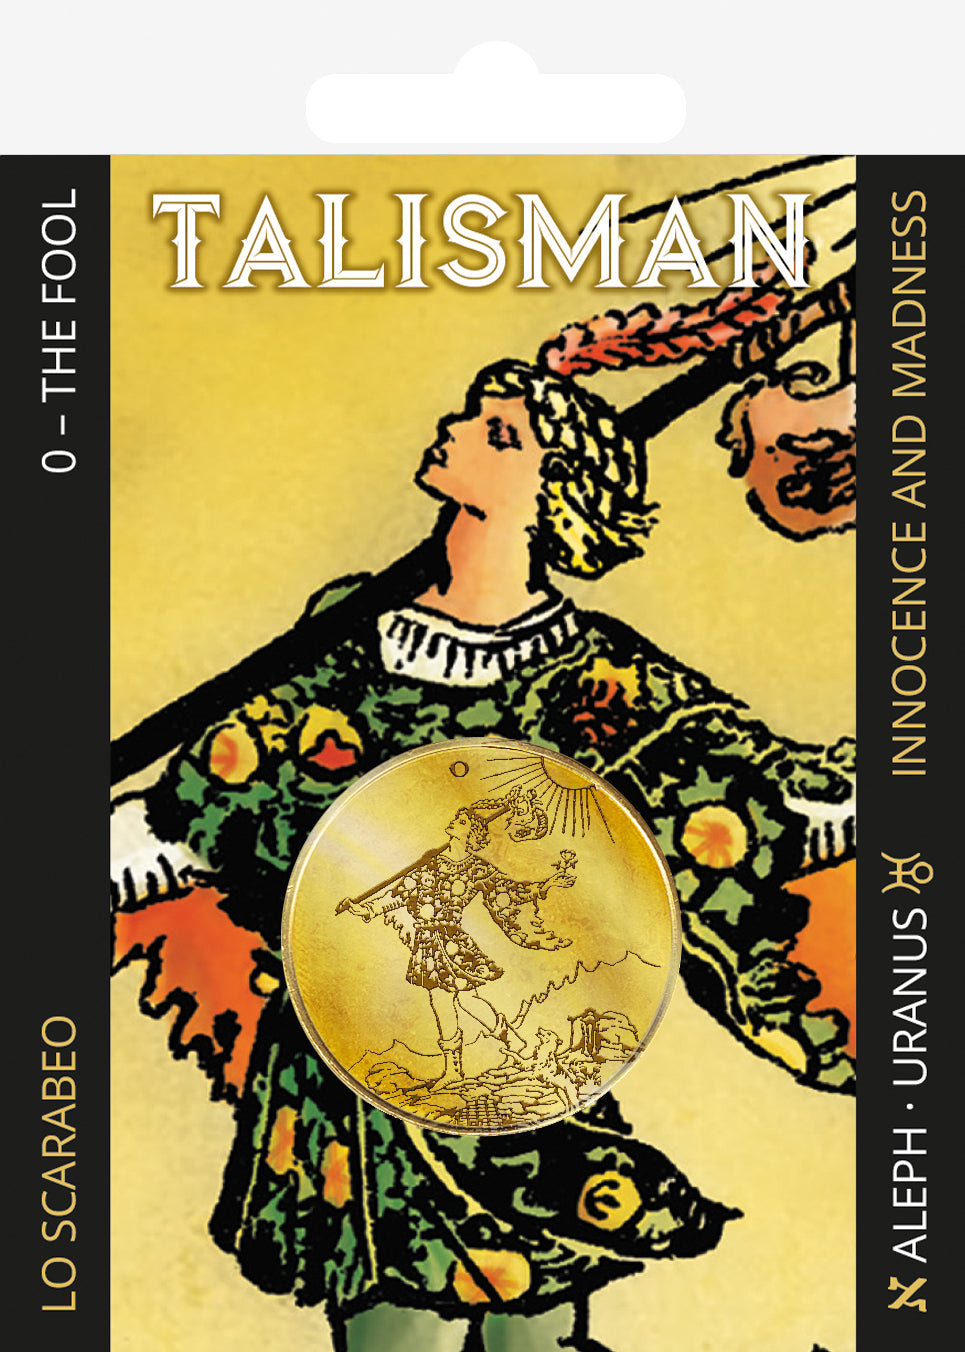 Tarot Talisman - 0. The Fool – Lo Scarabeo S.r.l.